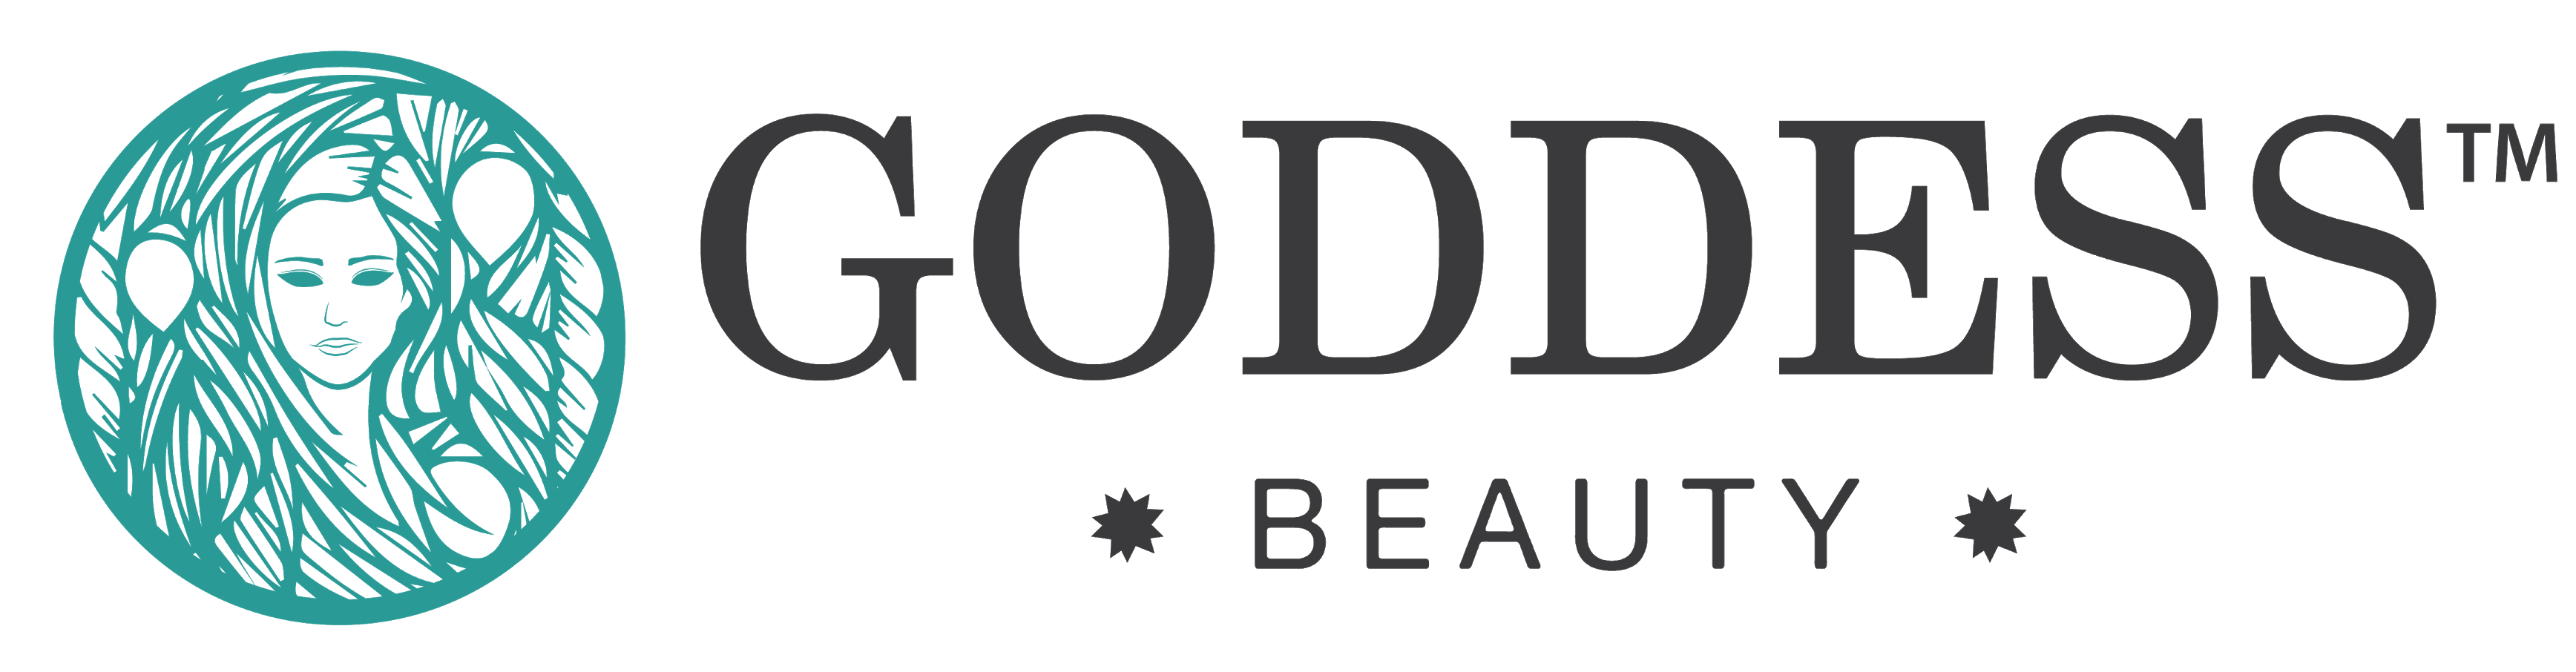 Goddess Face Logo - Goddess Beauty